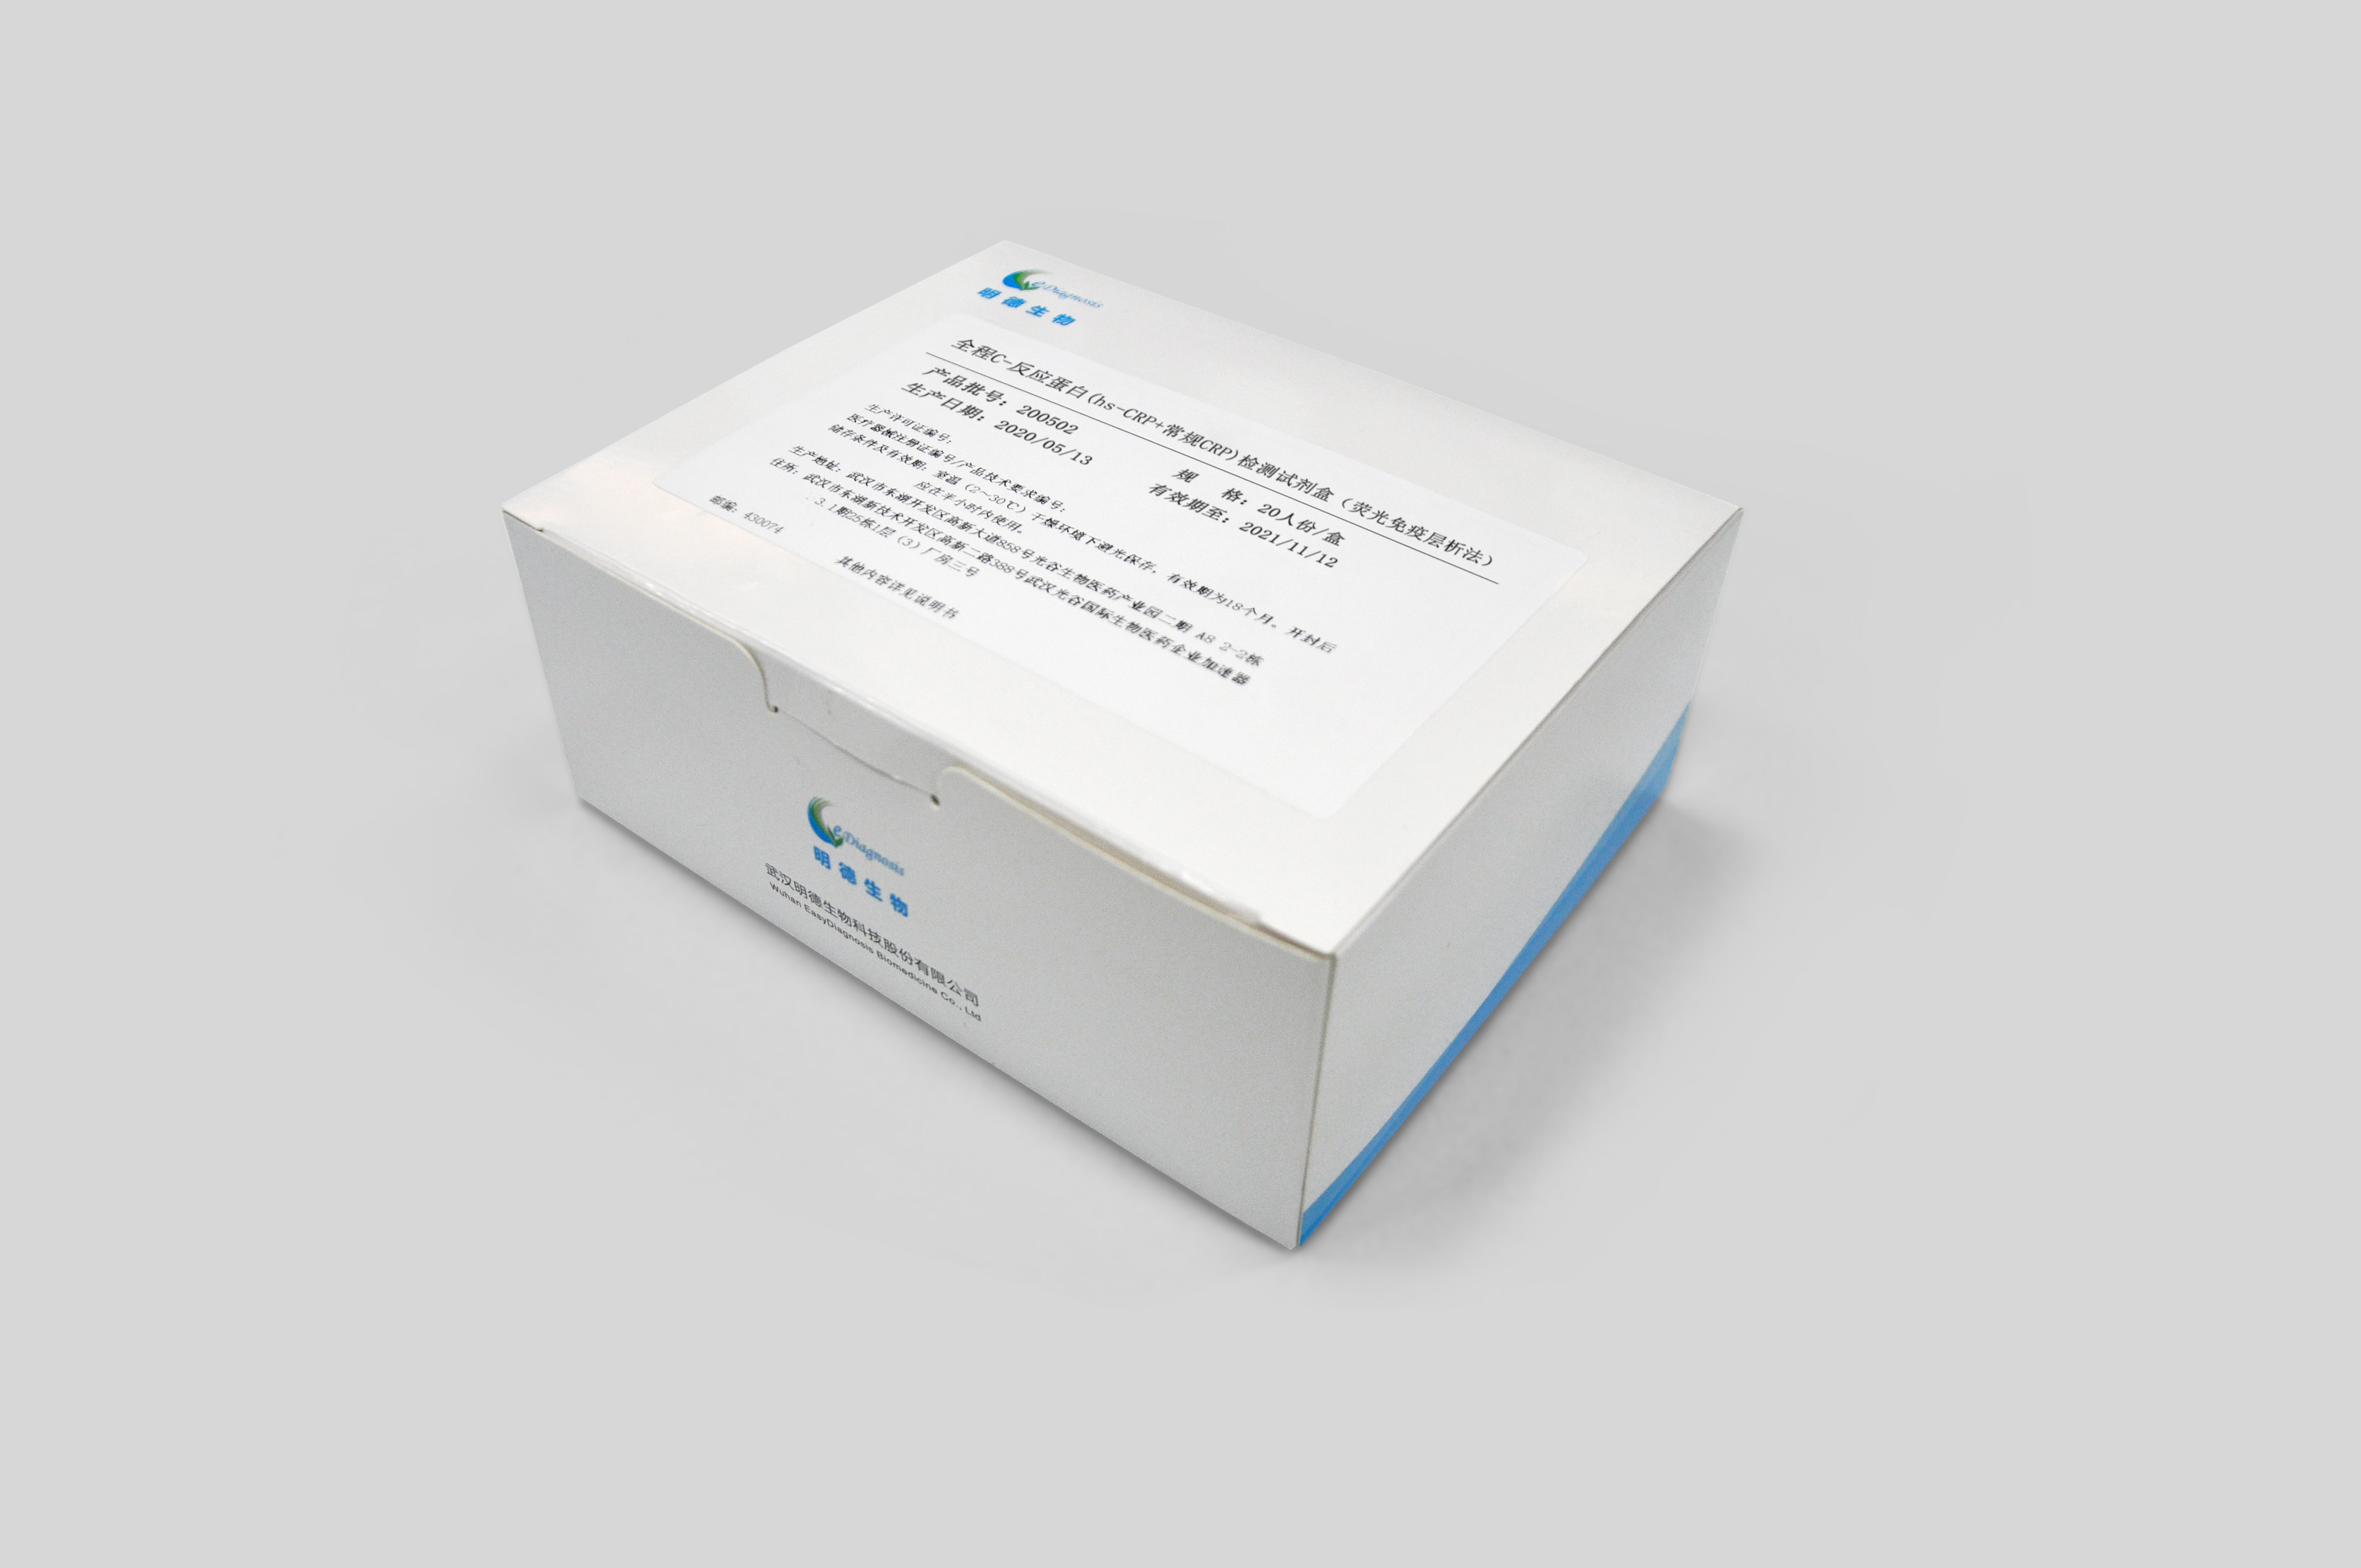 【明德】全程C-反应蛋白(hs-CRP+常规CRP)检测试剂盒(荧光免疫层析法) / 20人份/盒、40人份/盒